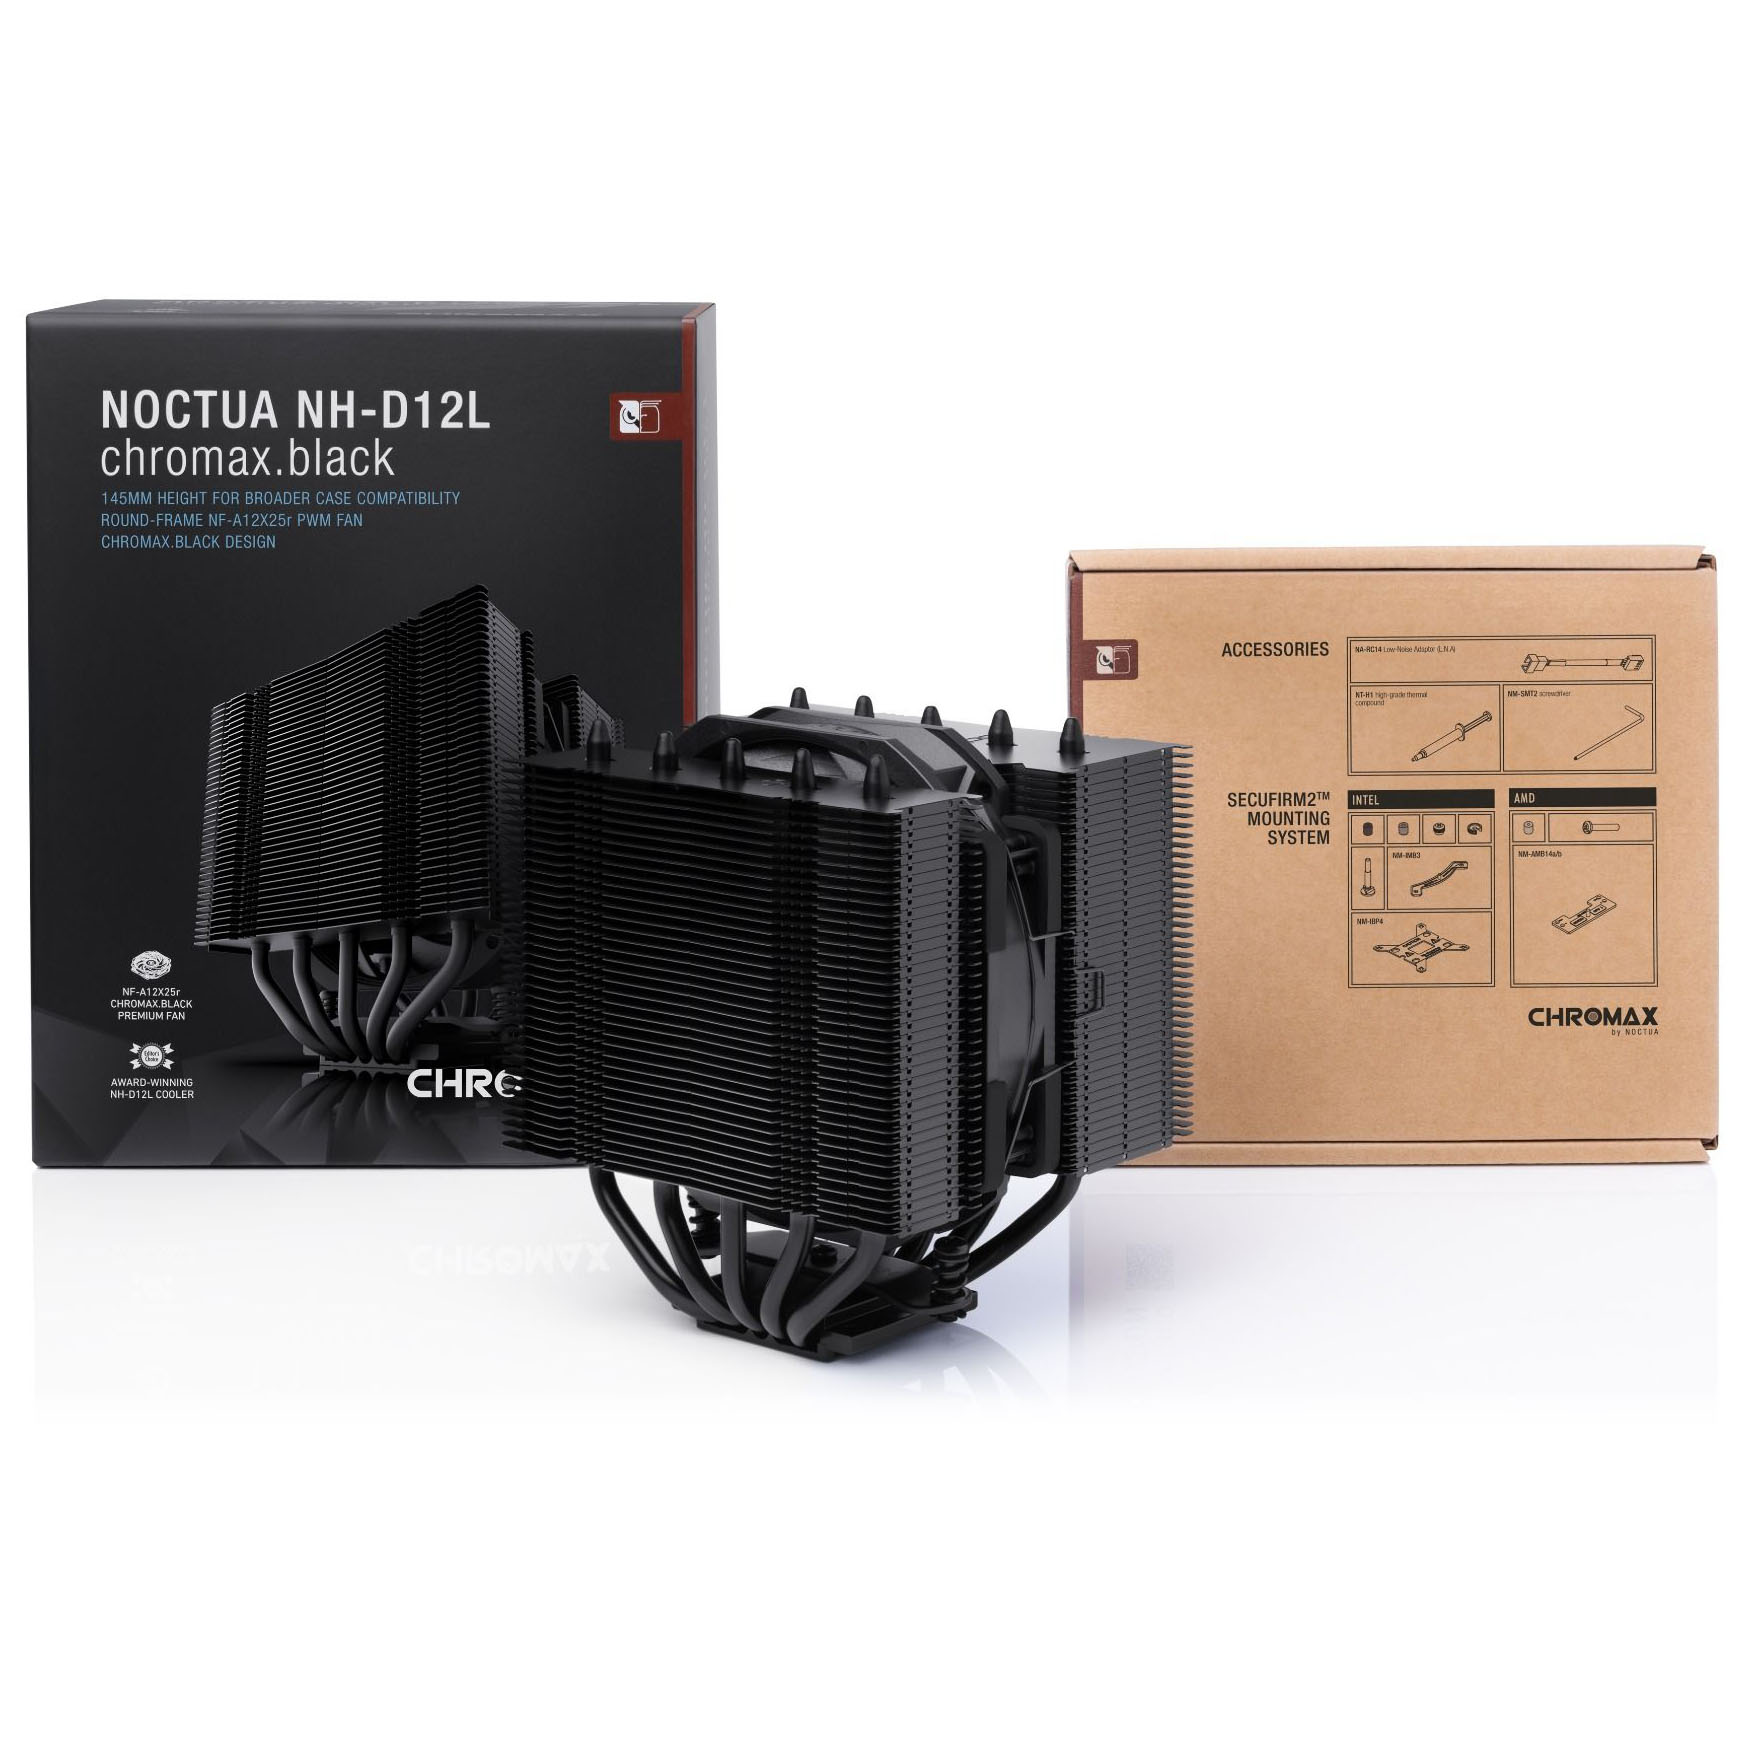 Noctua - Noctua NH-D12L Chromax Black Dual Tower CPU Cooler